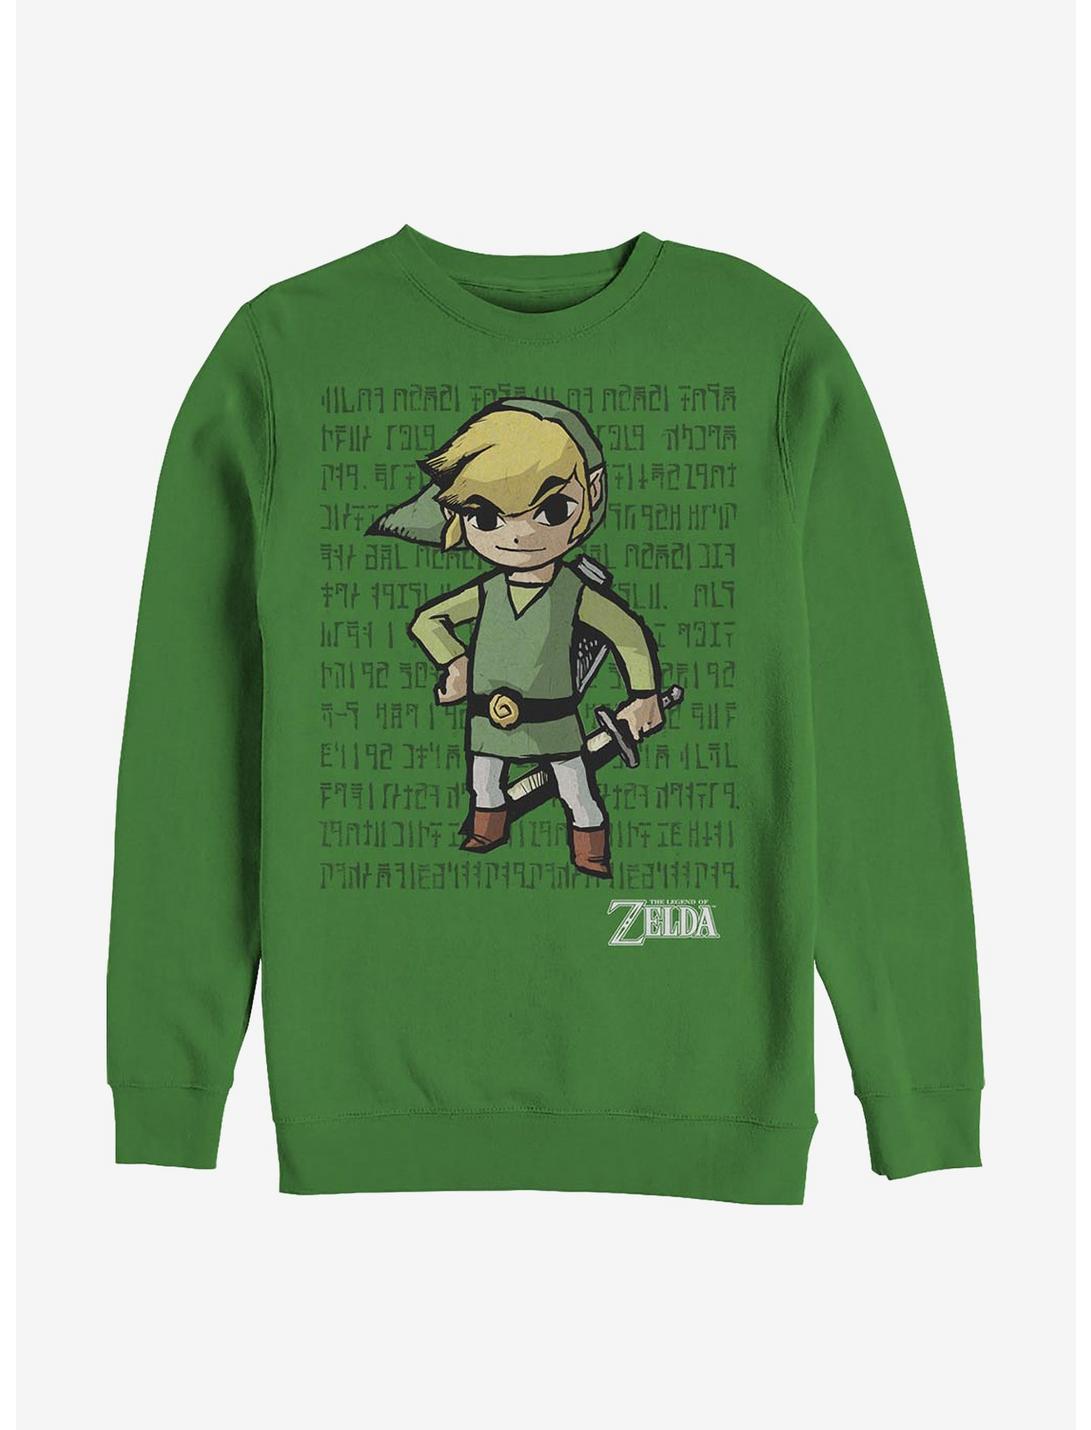 Nintendo Zelda Link Pose Crew Sweatshirt, KELLY, hi-res